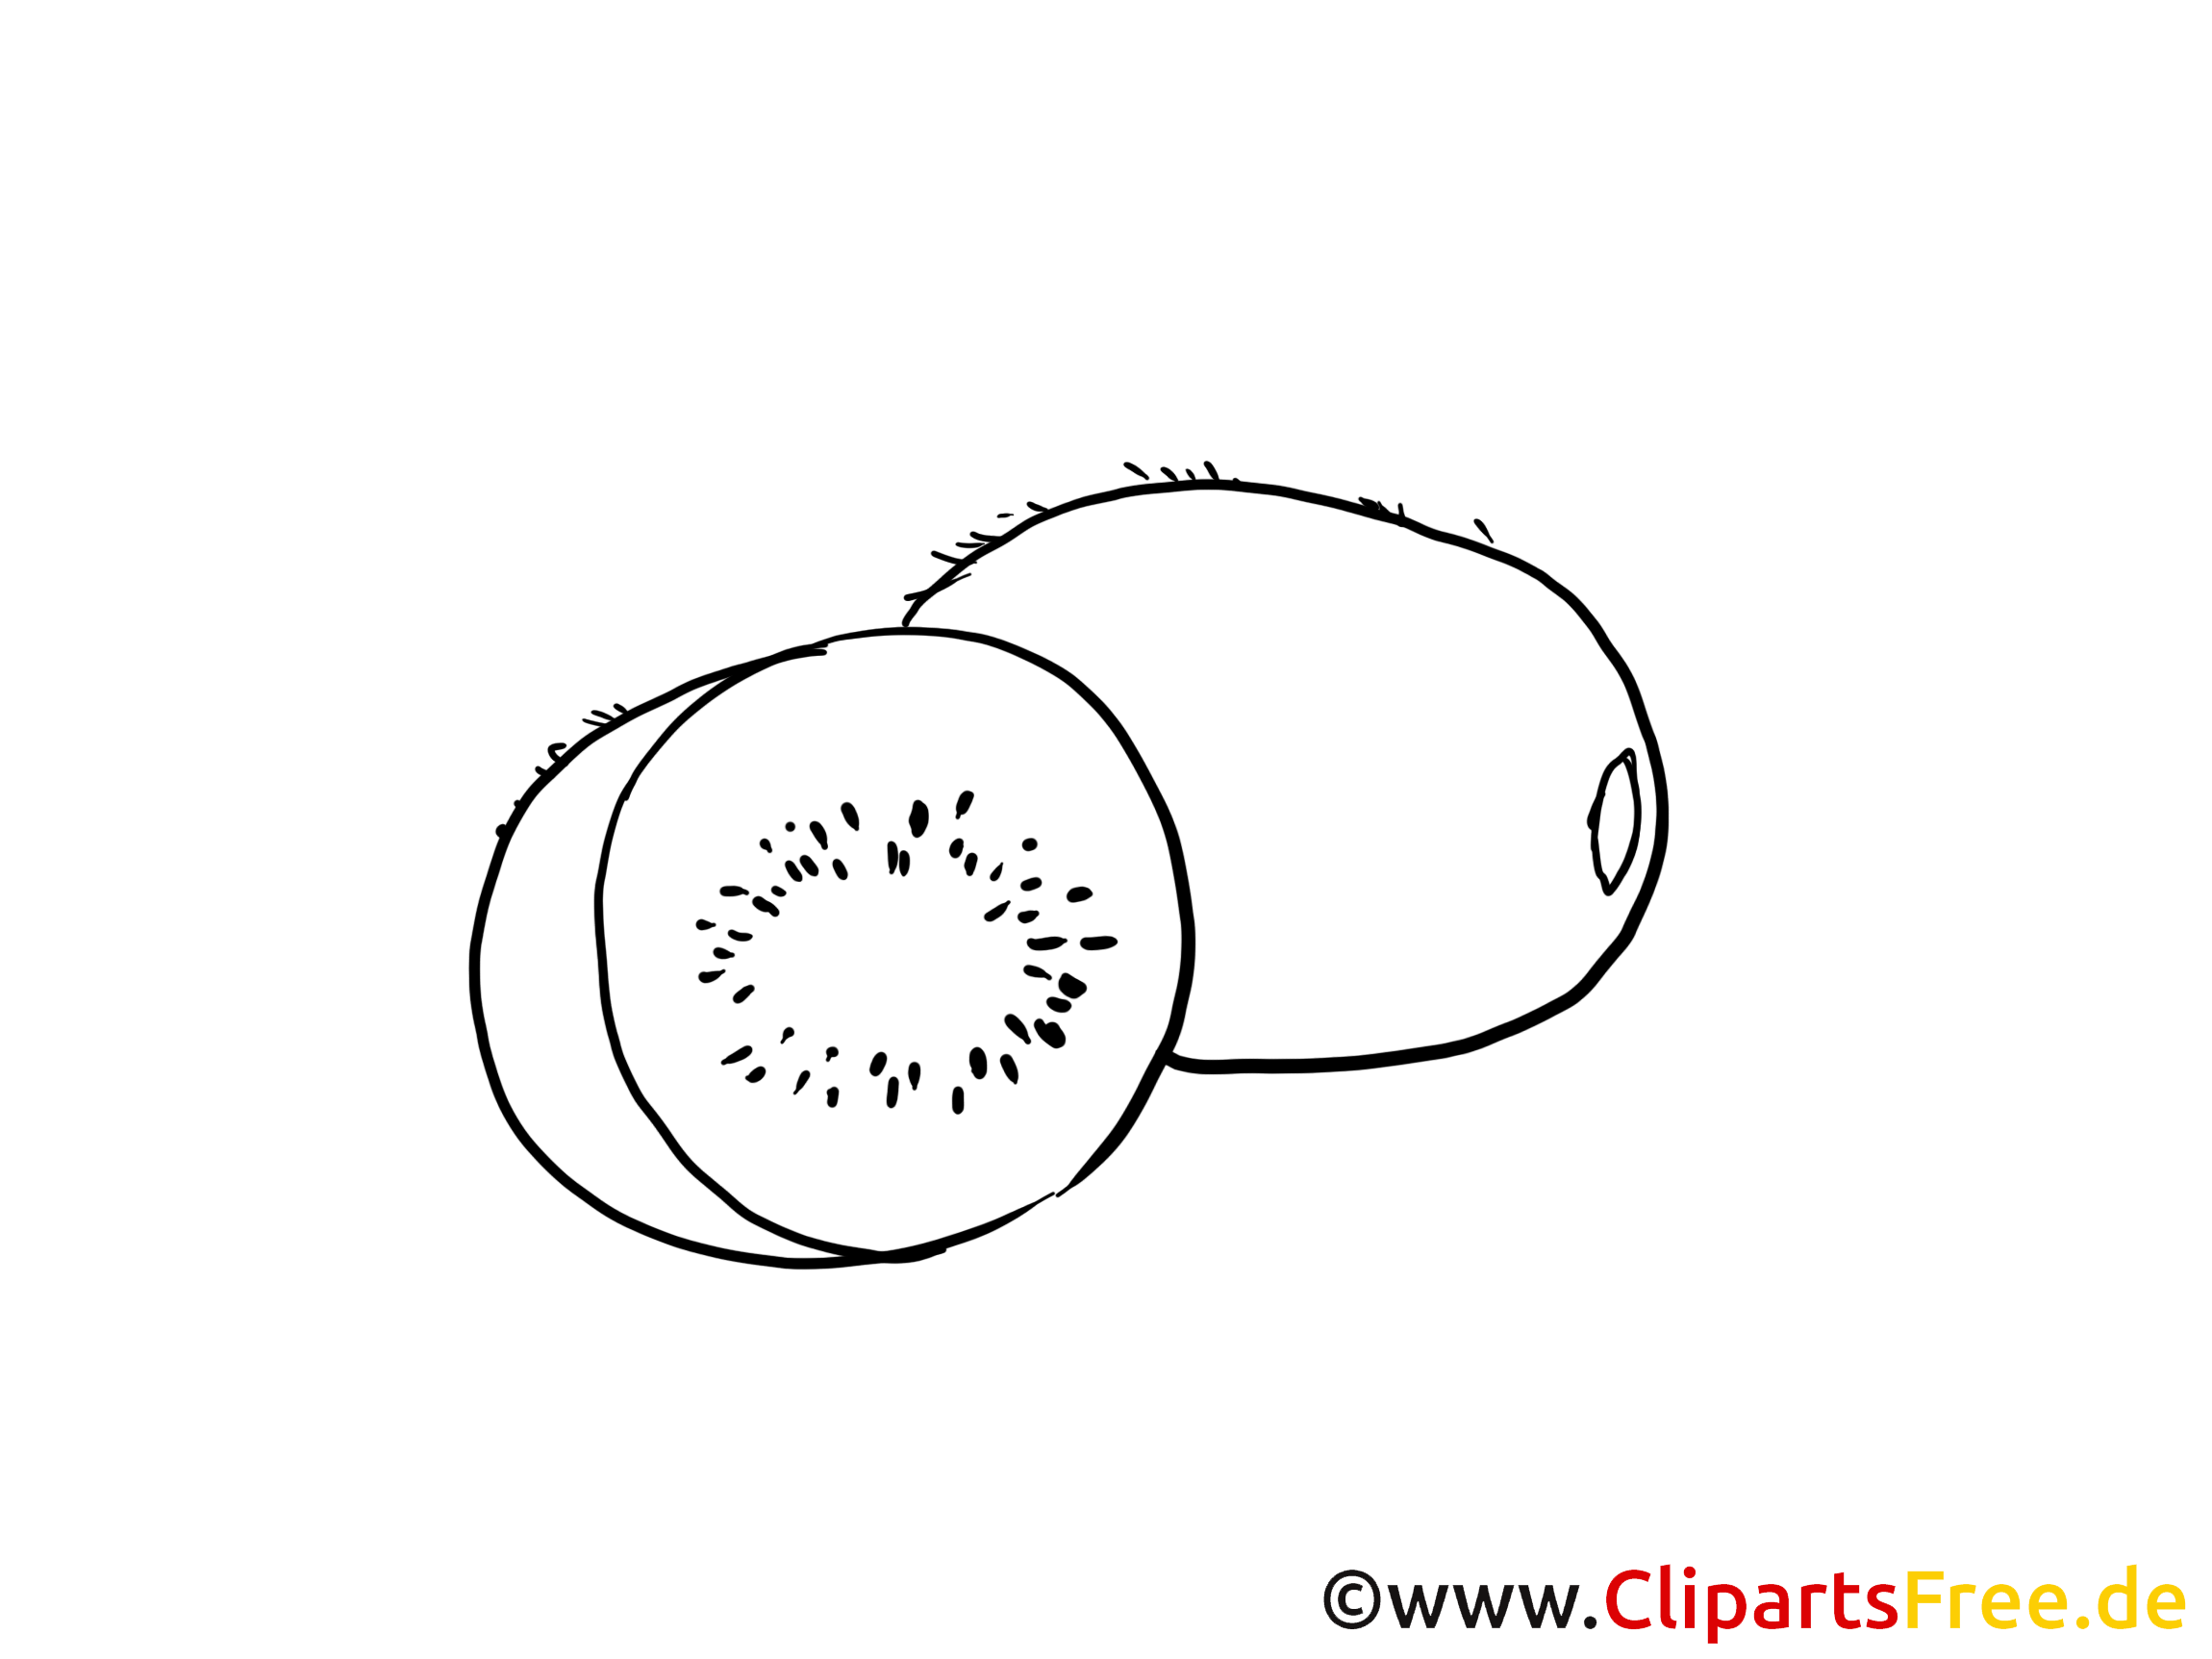 Kiwi images – Fruits gratuits à imprimer